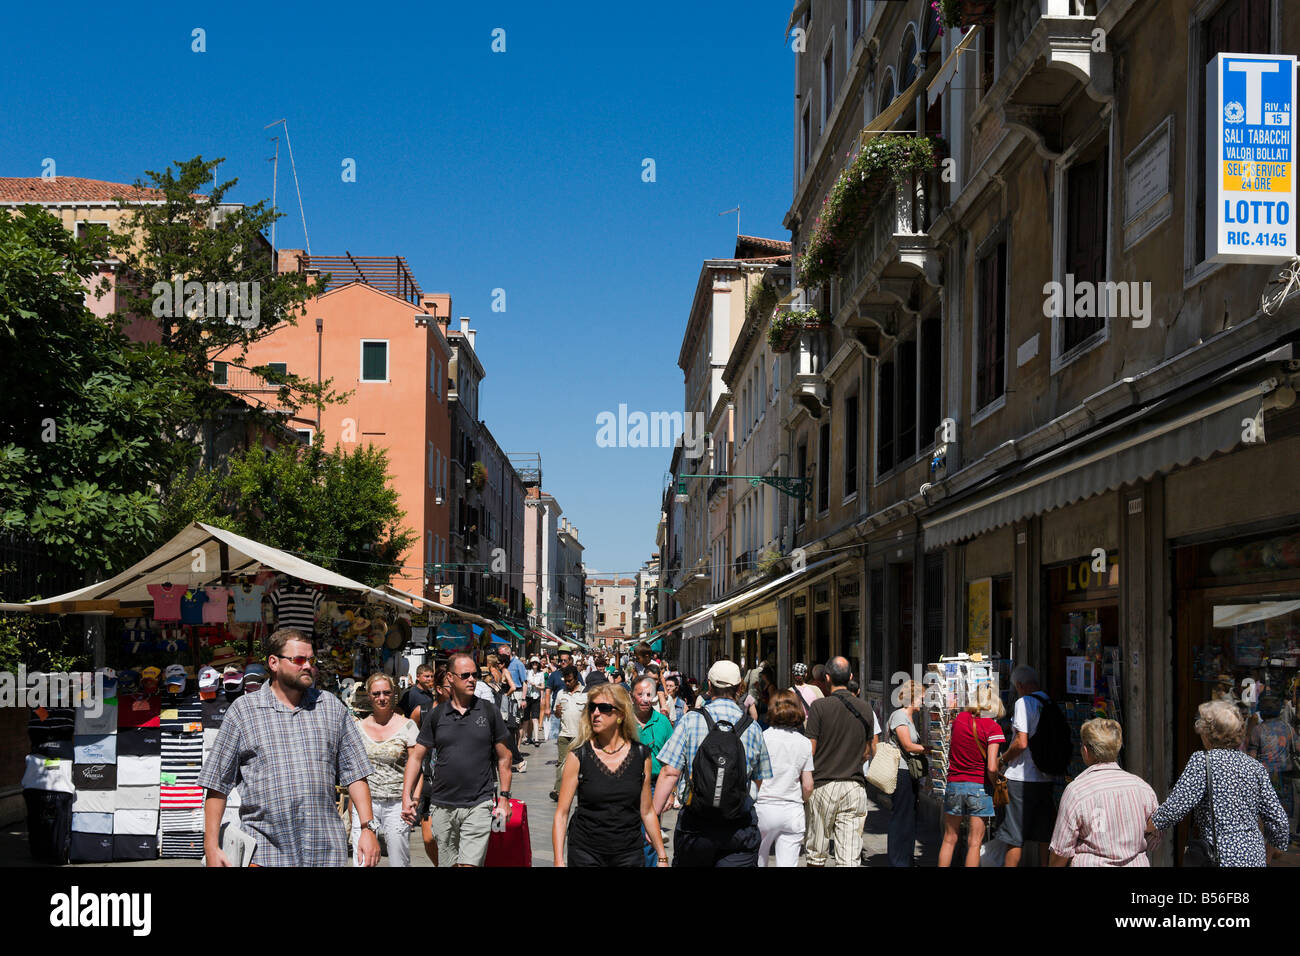 Rue commerçante animée menant à la gare, Strada Nova, Venise, Vénétie, Italie Banque D'Images